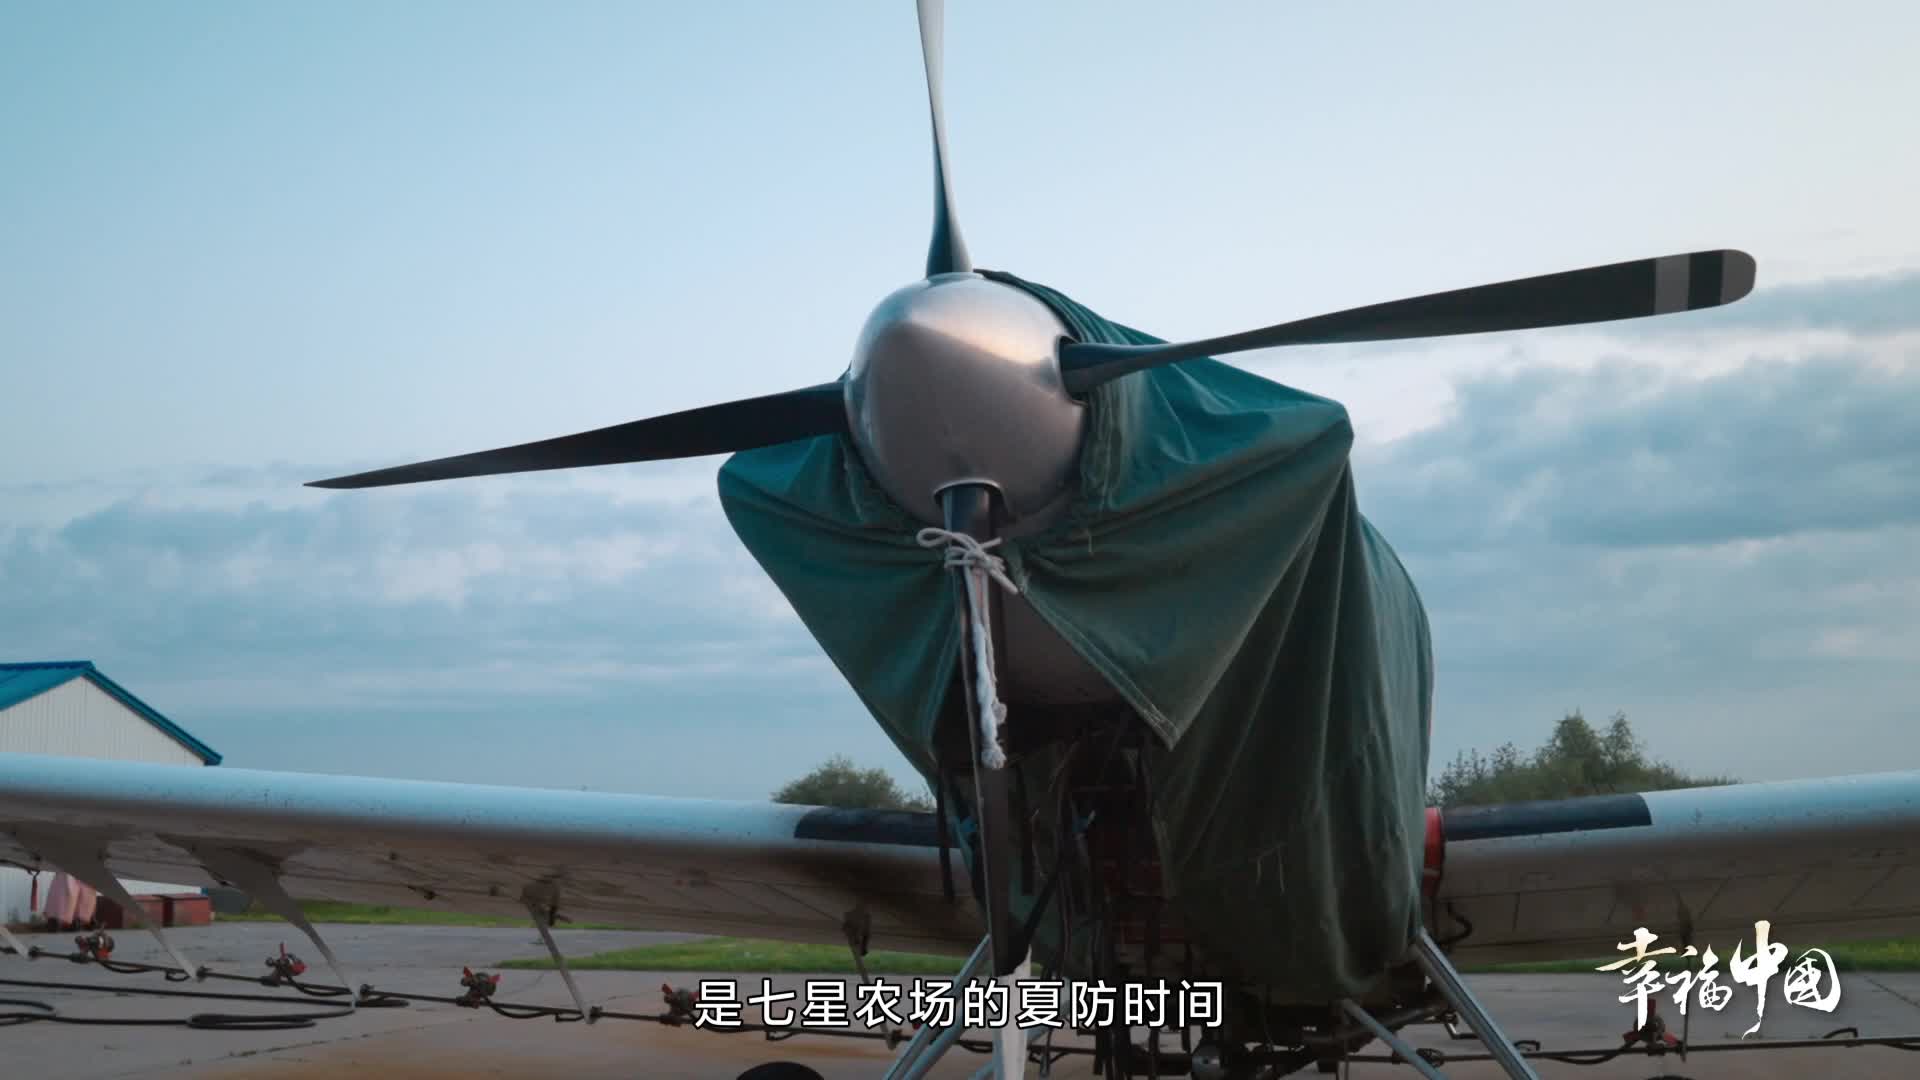 《这十年·幸福中国》专用飞机保障农事作业